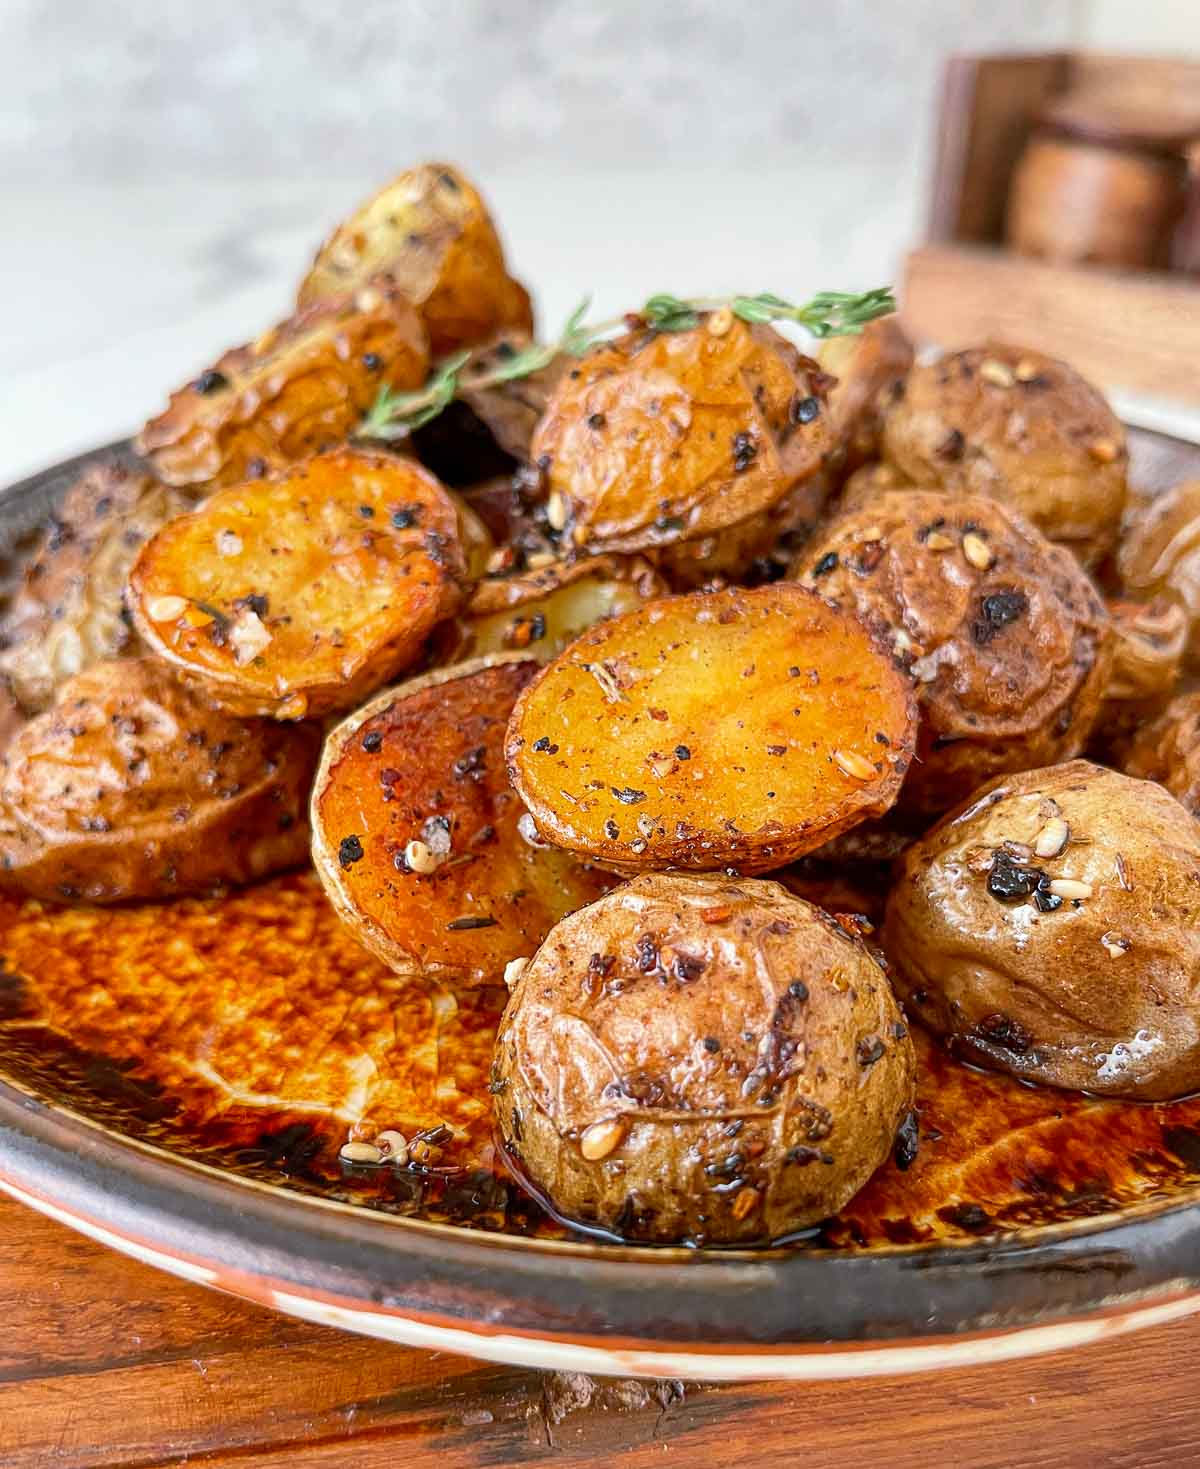 Bowl of roasted young potatoes with za'atar seasoning